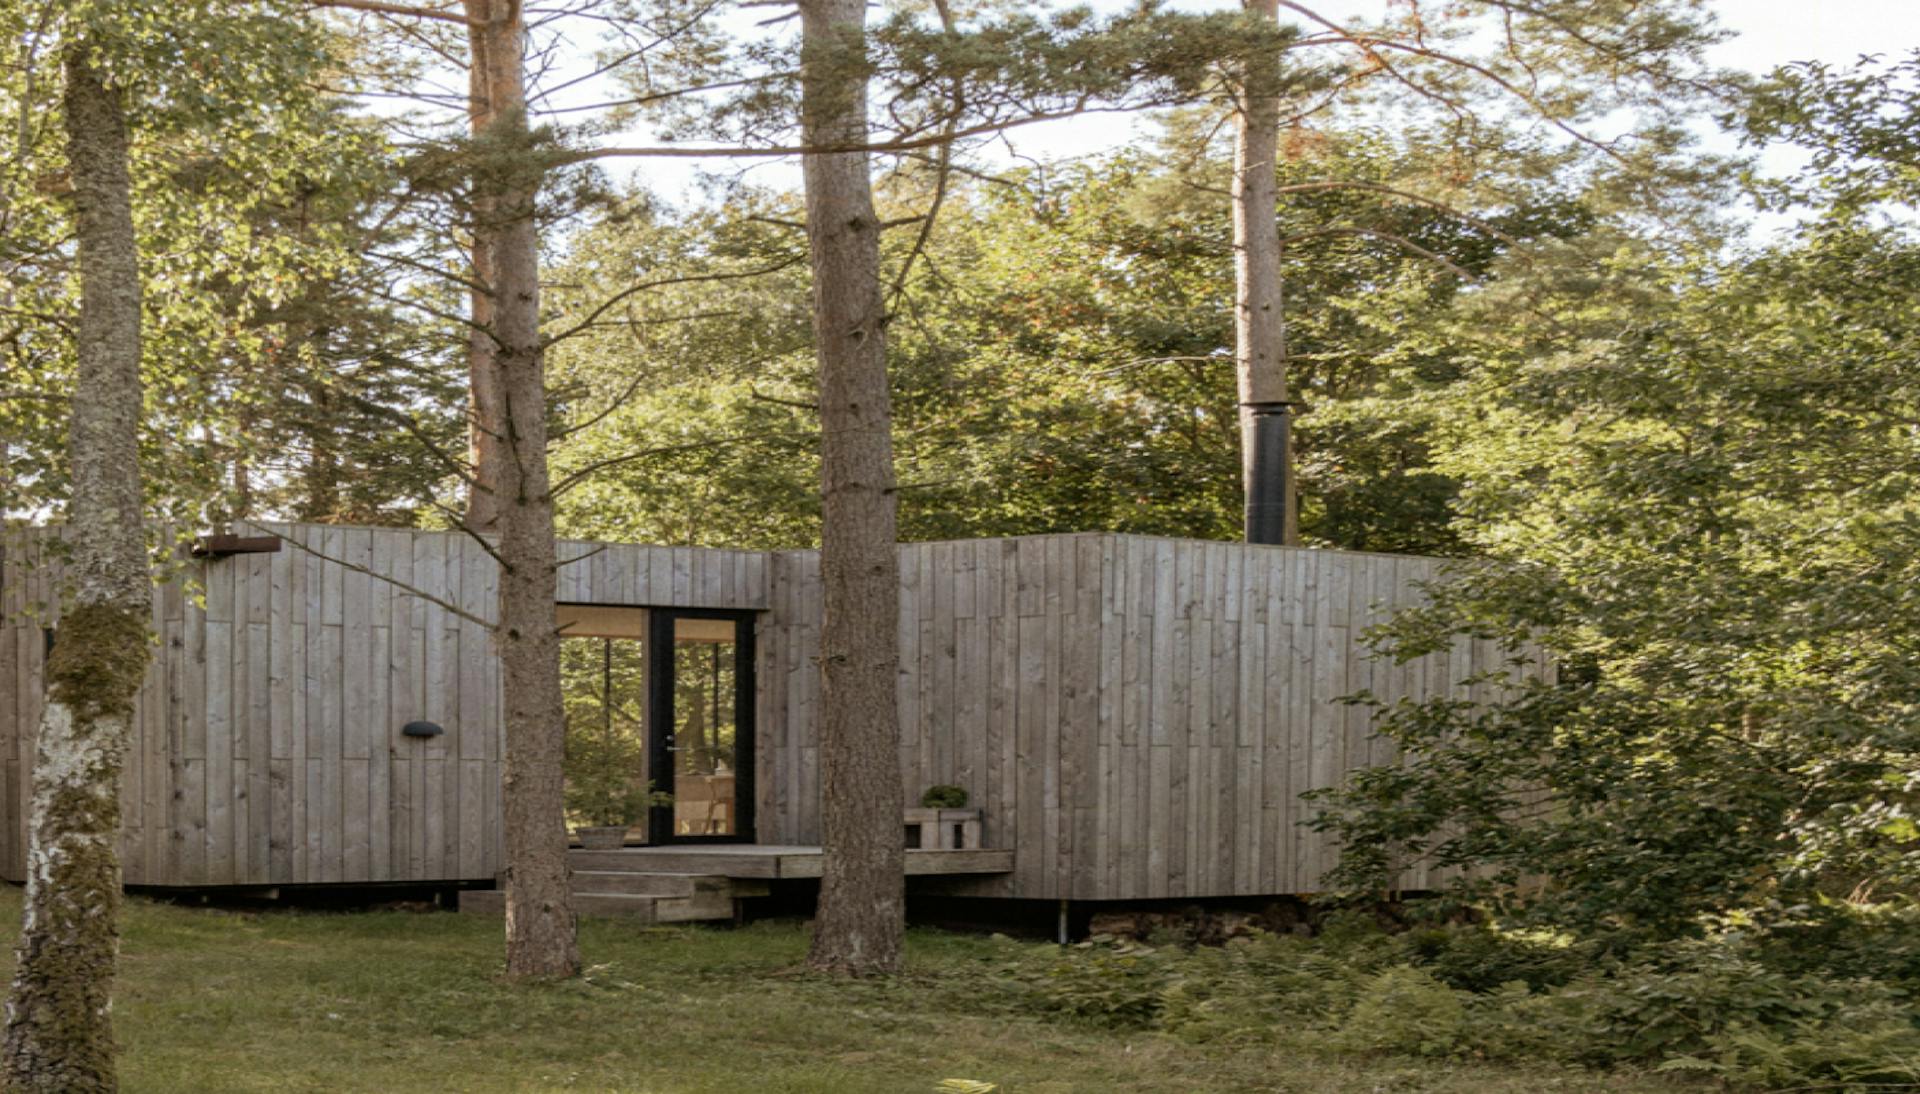 Sommerhus udlejning af smukt hus i nordisk stil med lyse vægge i birkefinér